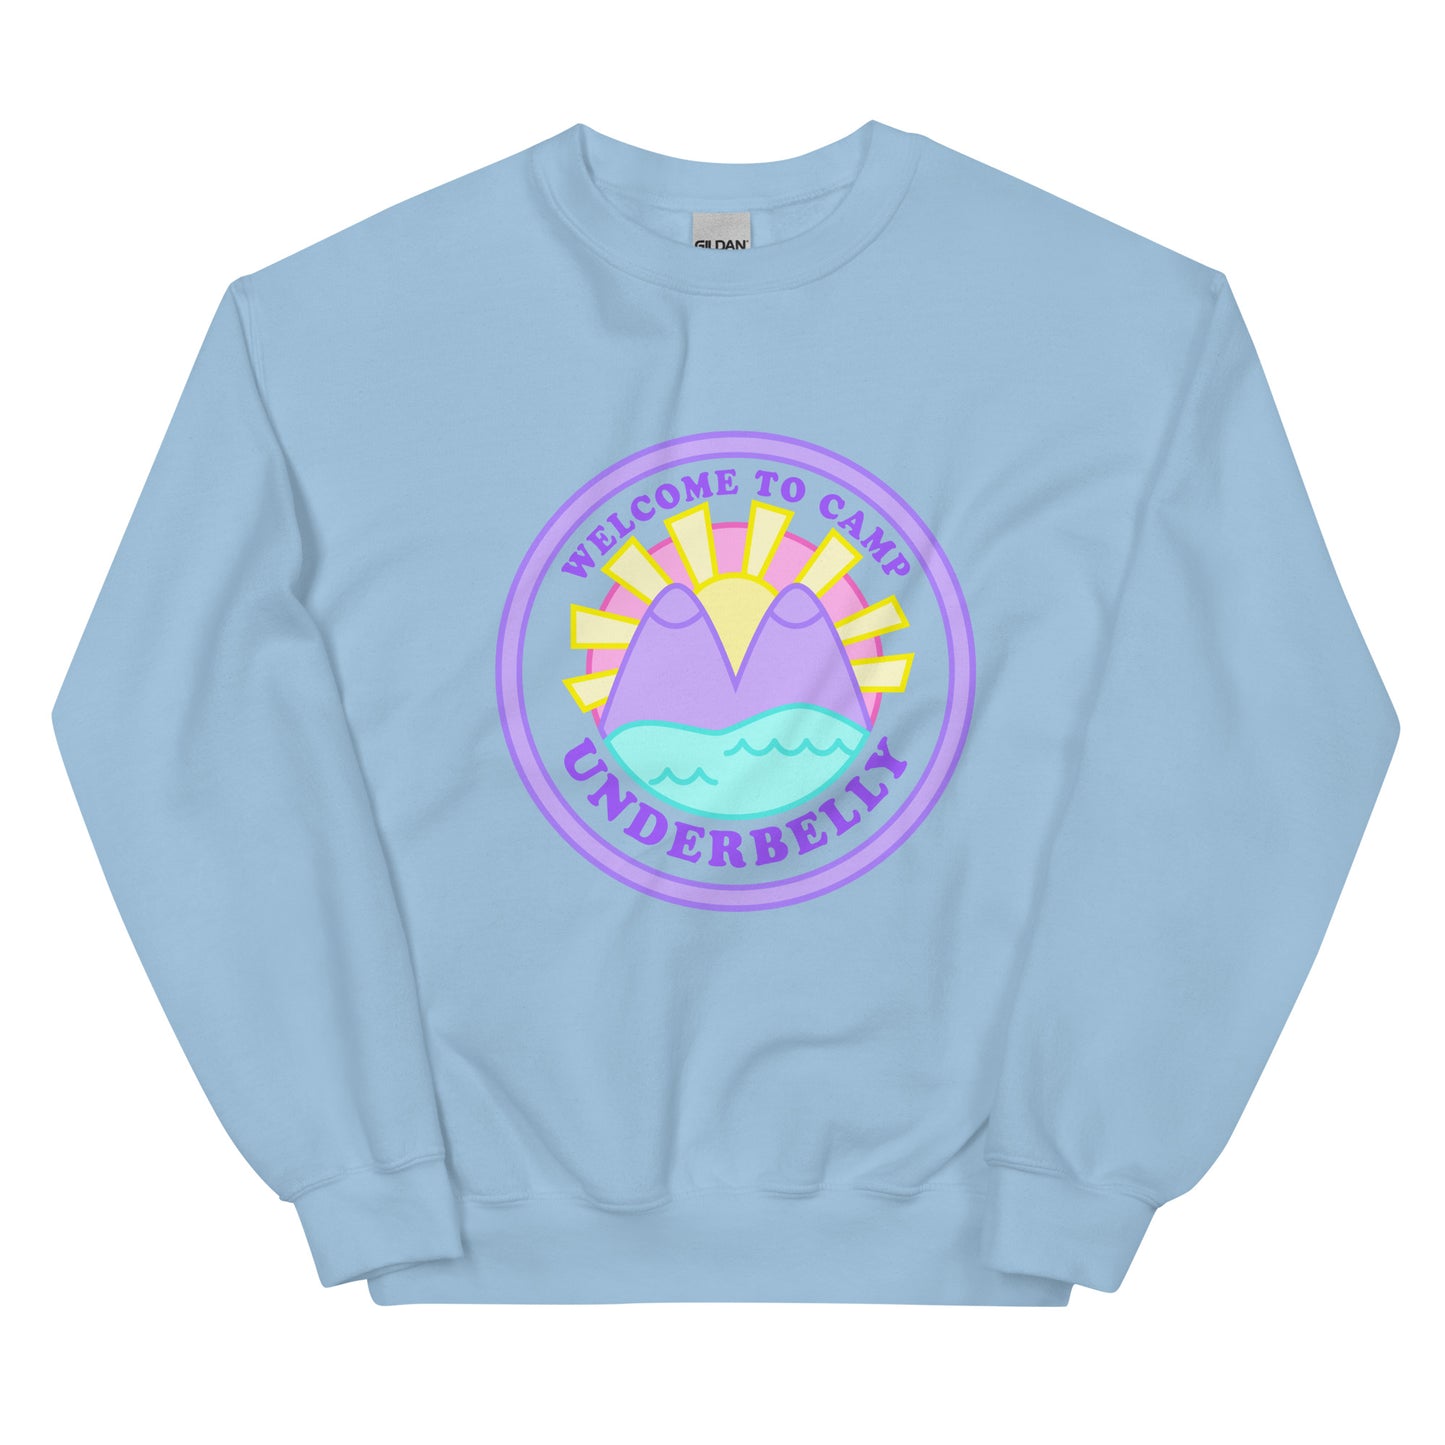 Camp Underbelly Sweatshirt